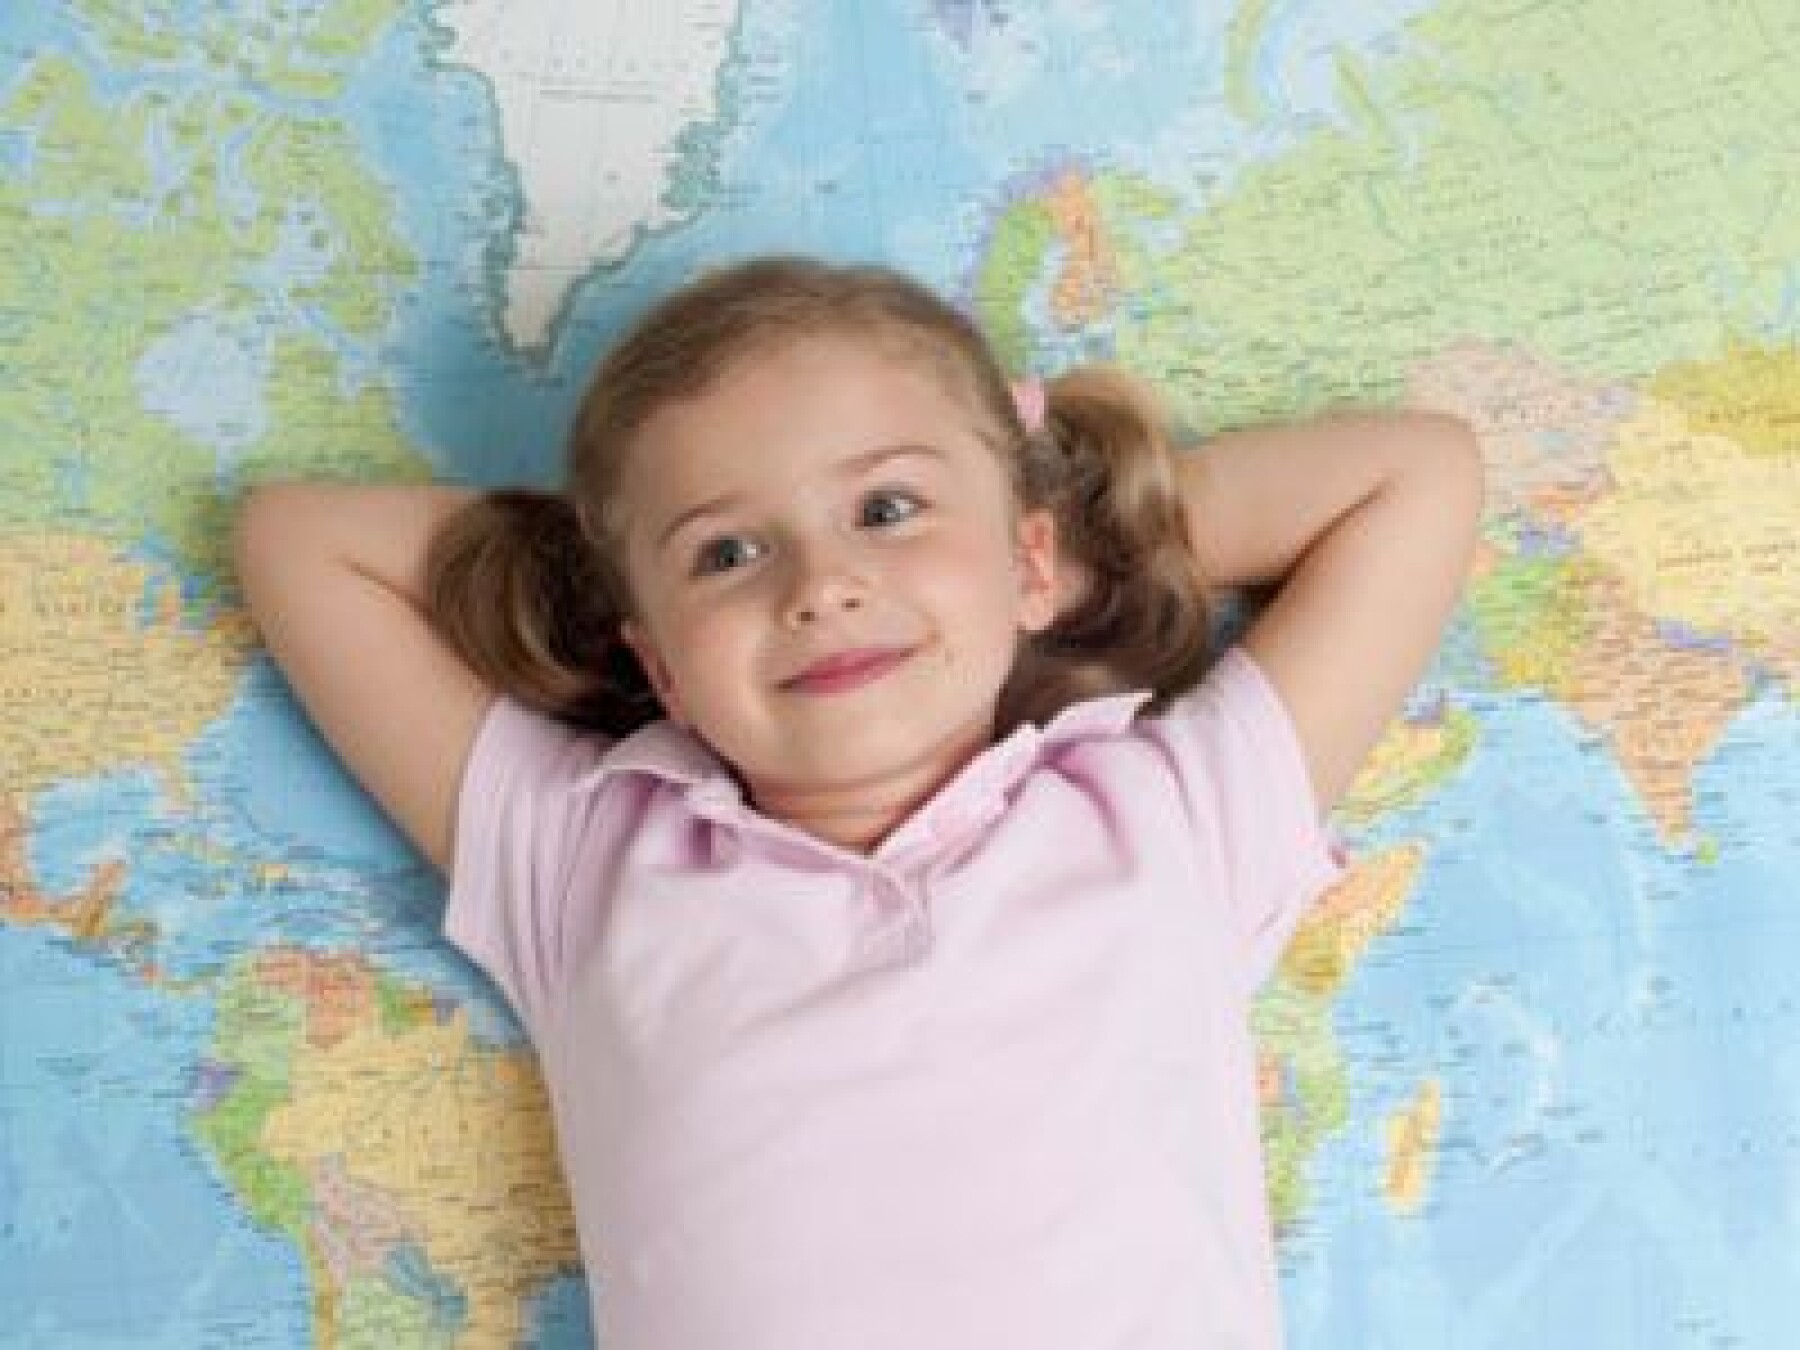 L’enfant peut apprendre plusieurs langues étrangères très tôt !